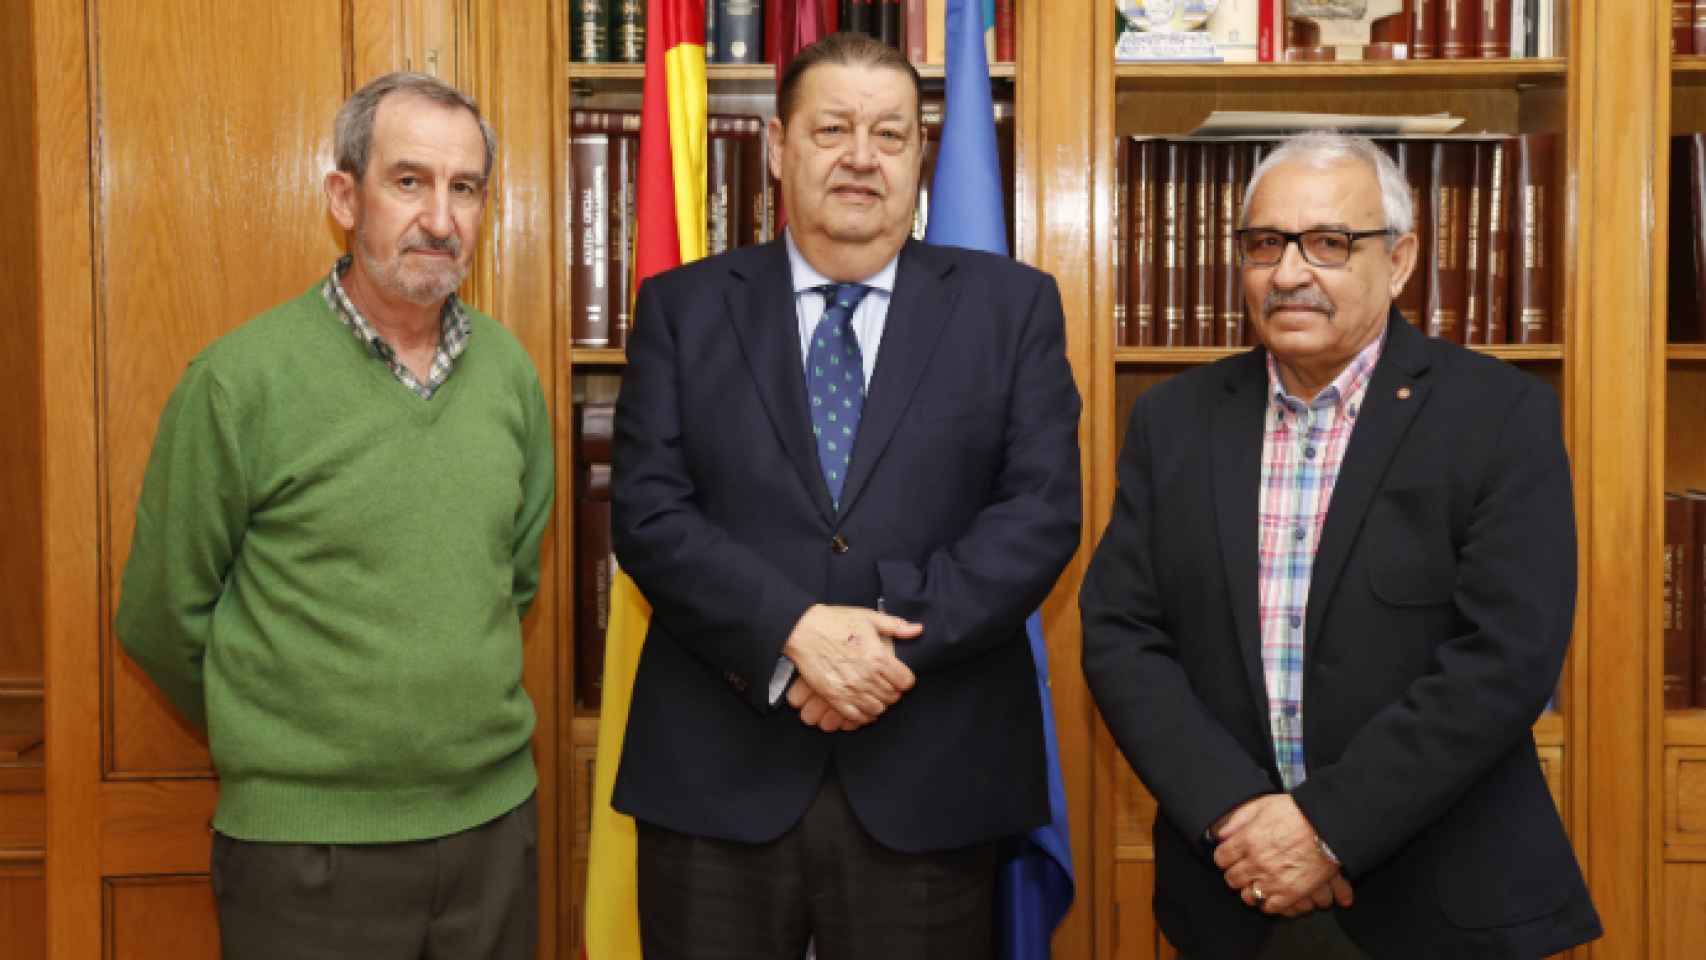 Carlos Martín-Fuertes, Jesús Fernández Vaquero y Carlos del Valle, de izquierda a derecha